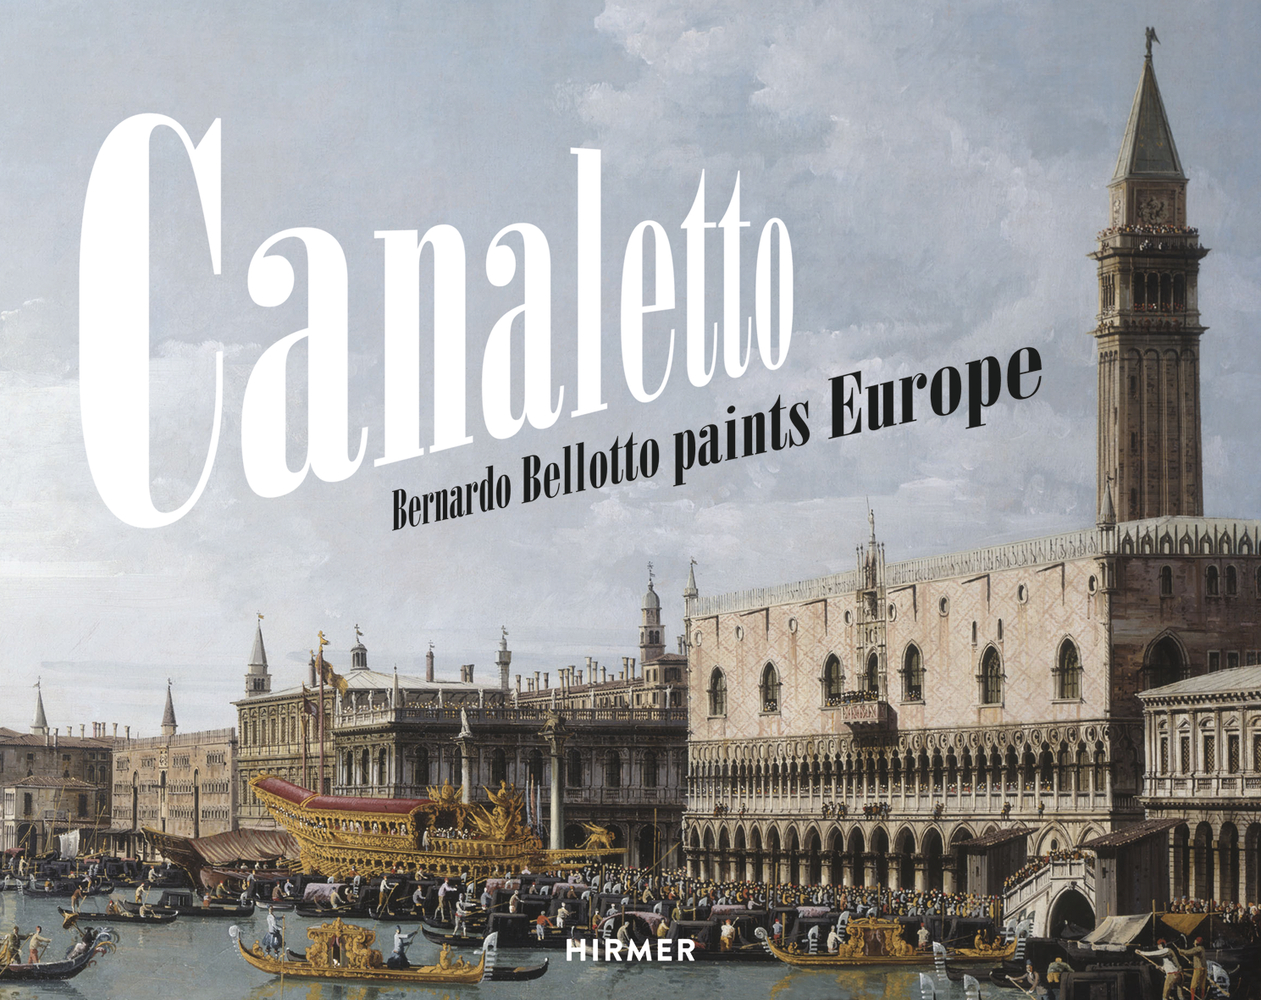 Canaletto | Bernardo Bellotto paints Europe